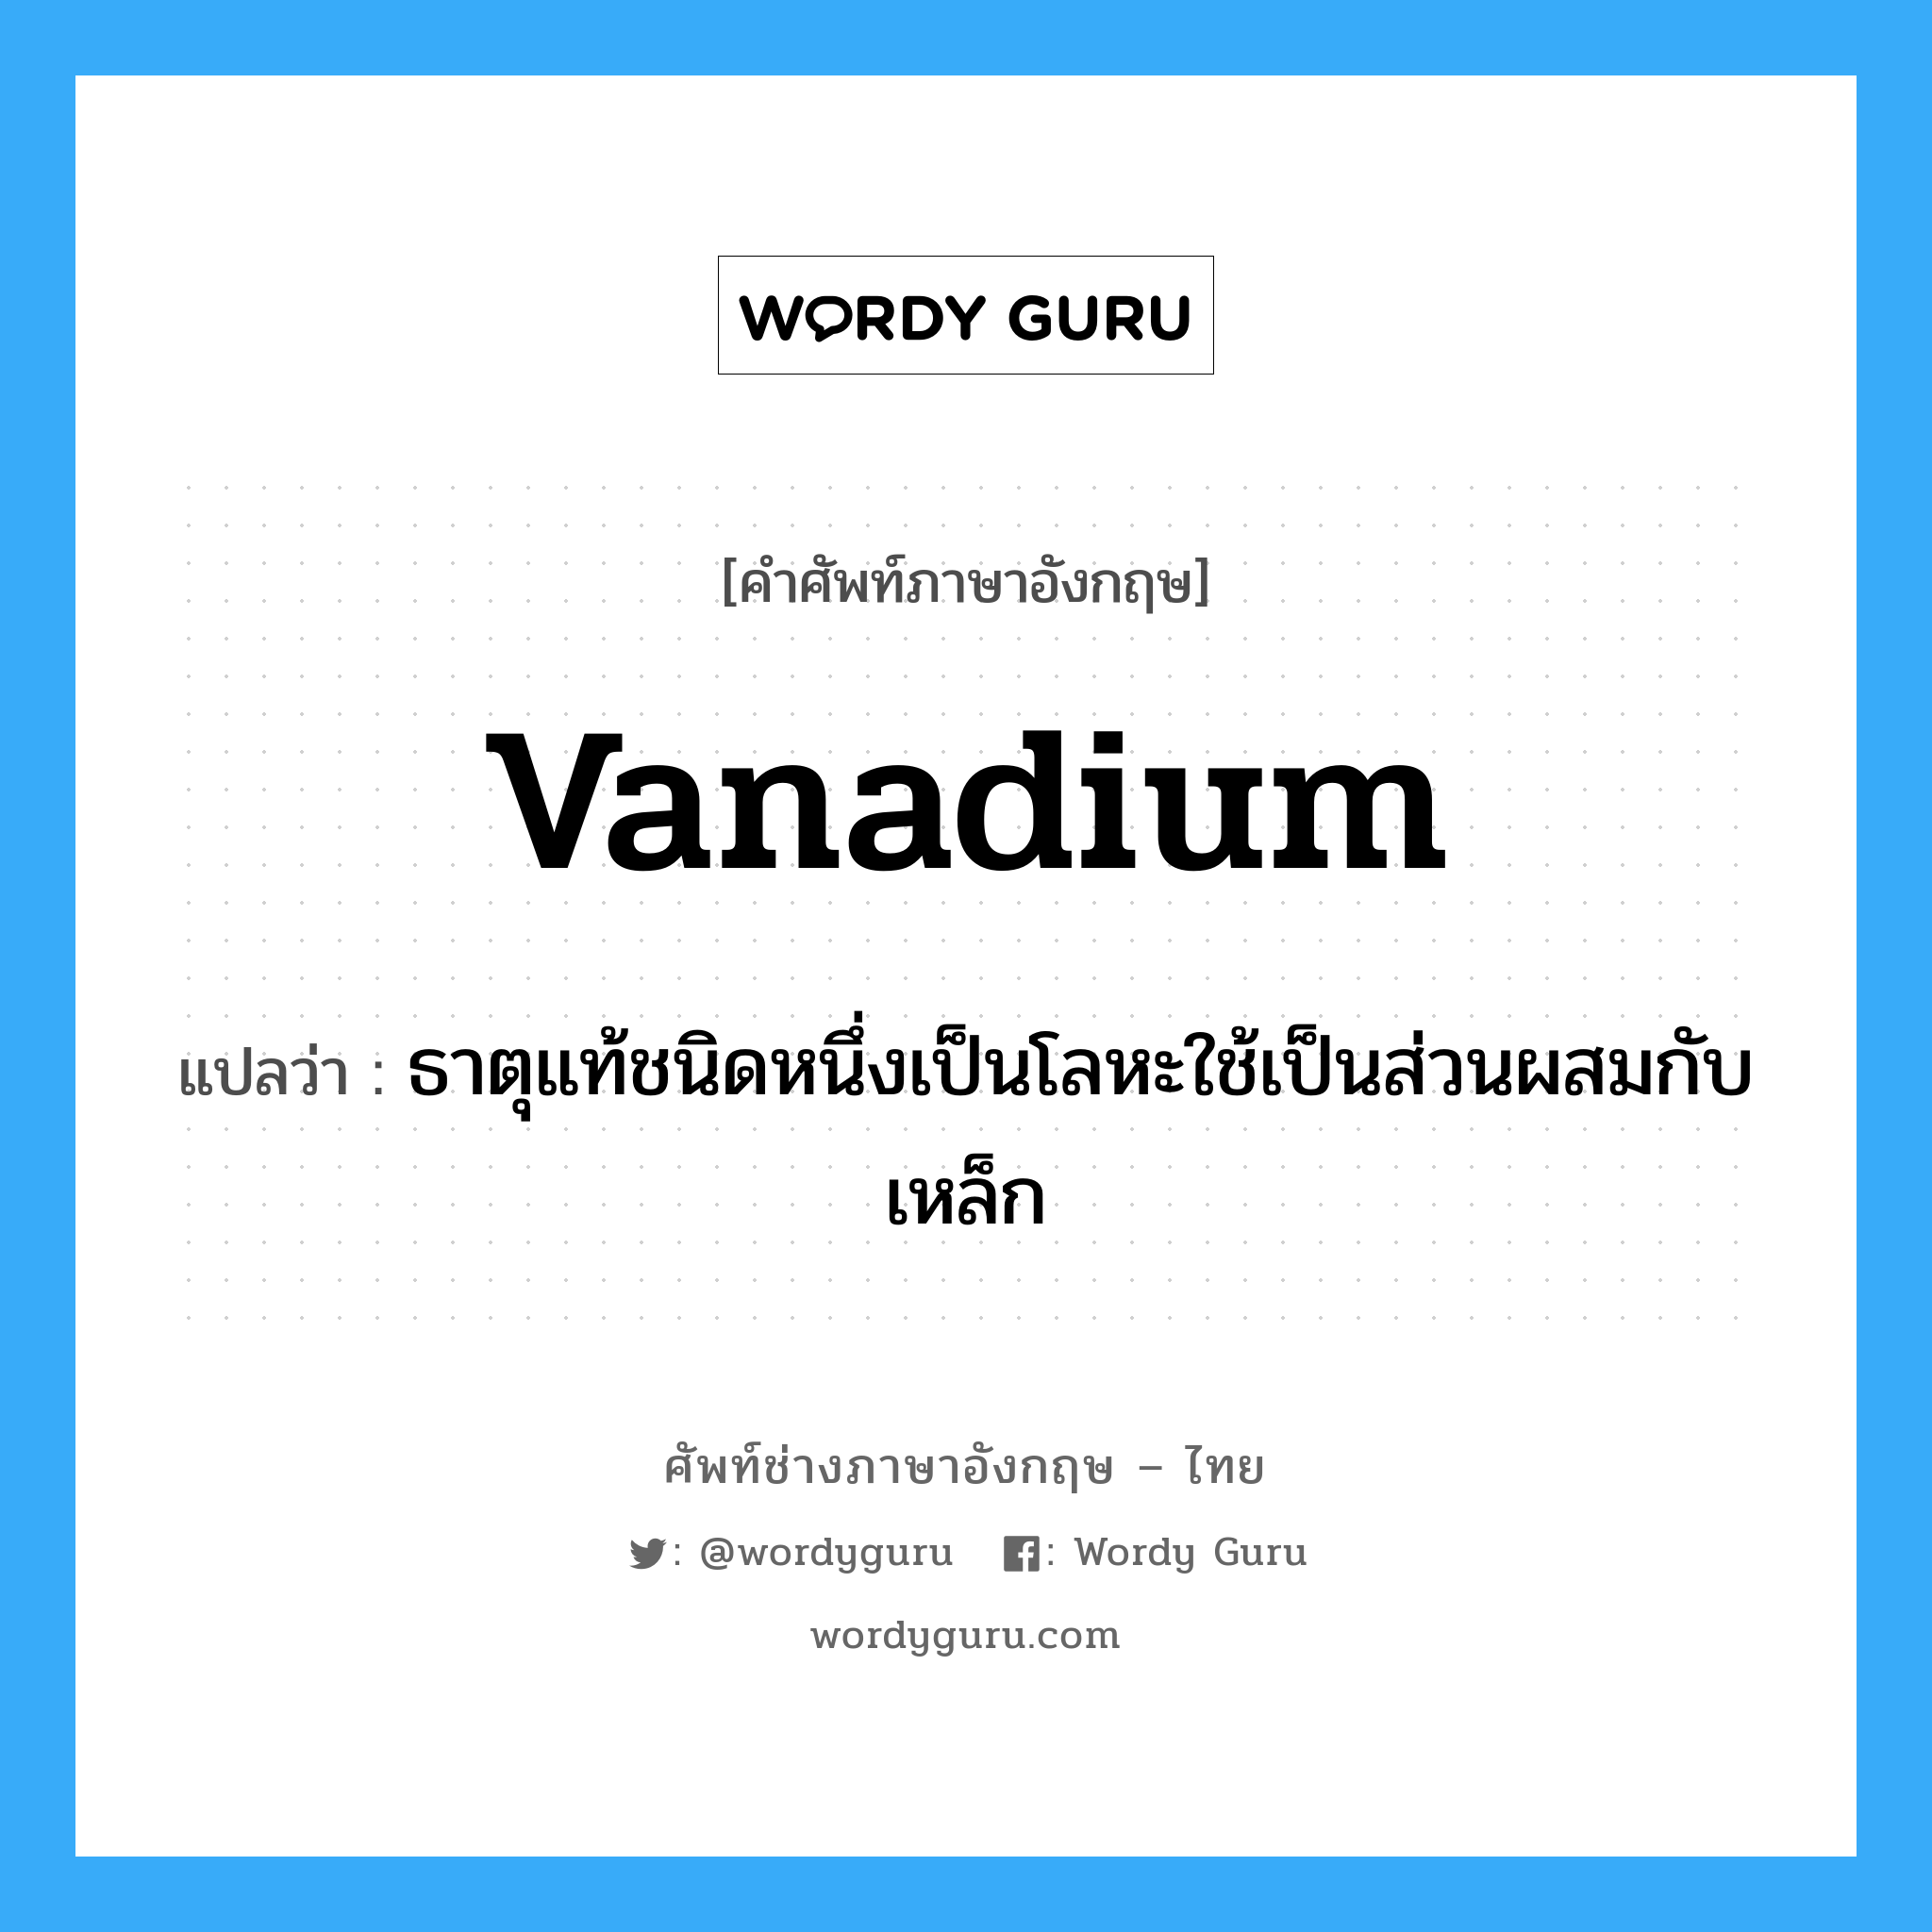 vanadium แปลว่า?, คำศัพท์ช่างภาษาอังกฤษ - ไทย vanadium คำศัพท์ภาษาอังกฤษ vanadium แปลว่า ธาตุแท้ชนิดหนึ่งเป็นโลหะใช้เป็นส่วนผสมกับเหล็ก